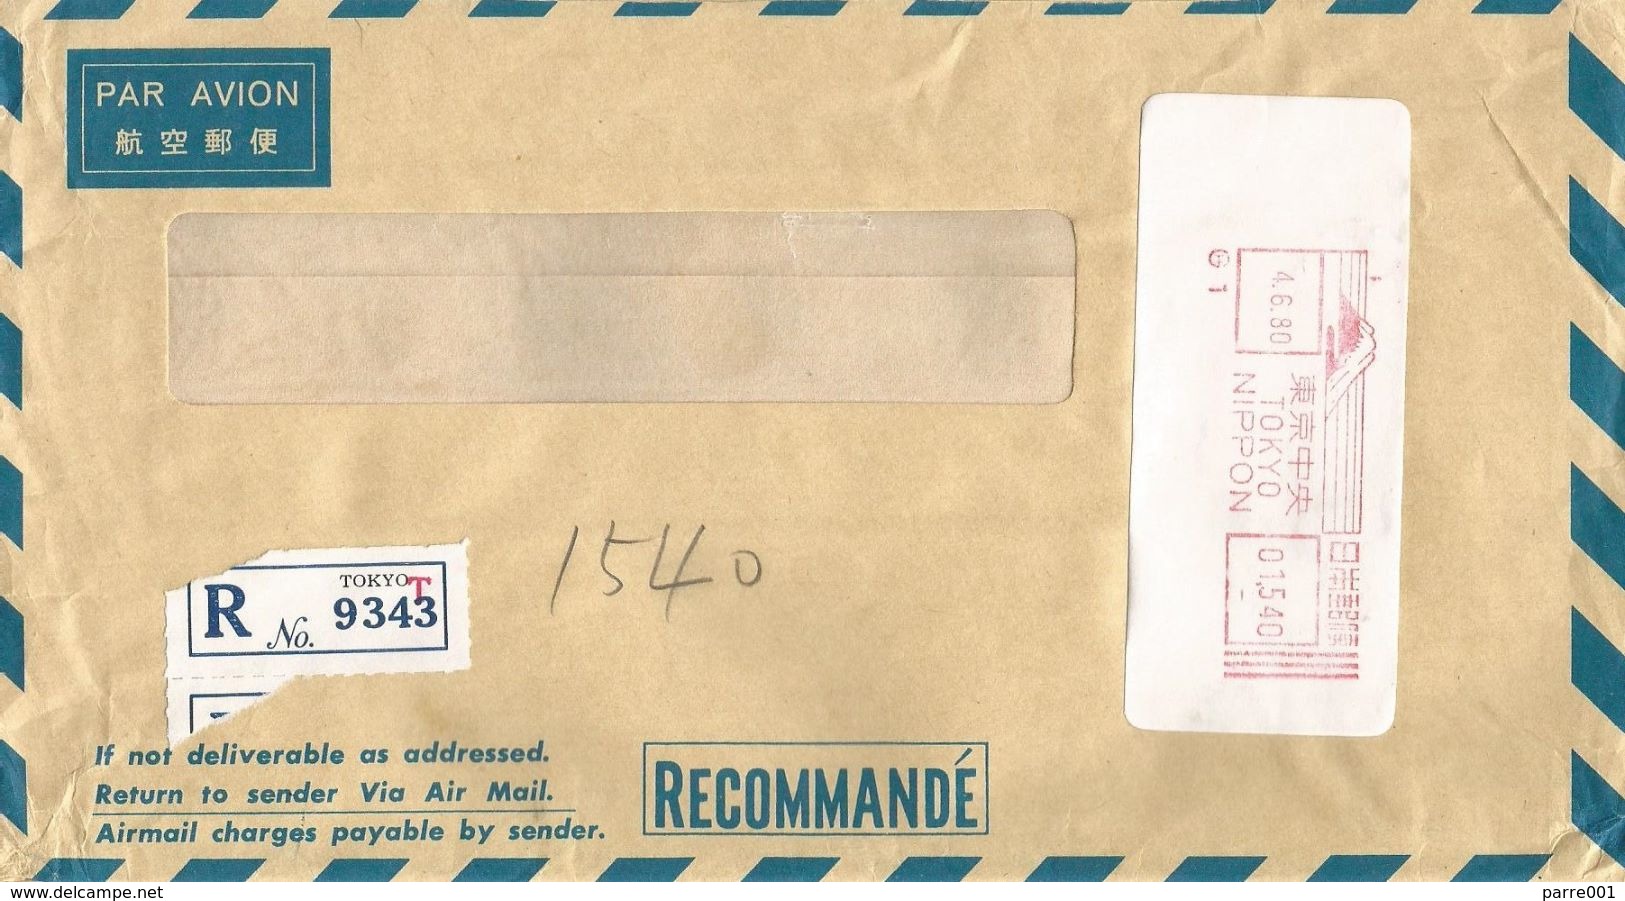 Japan 1980 Tokyo Meter Hasler “F88” H1 Bank Of Tokyo Registered Cover - Briefe U. Dokumente